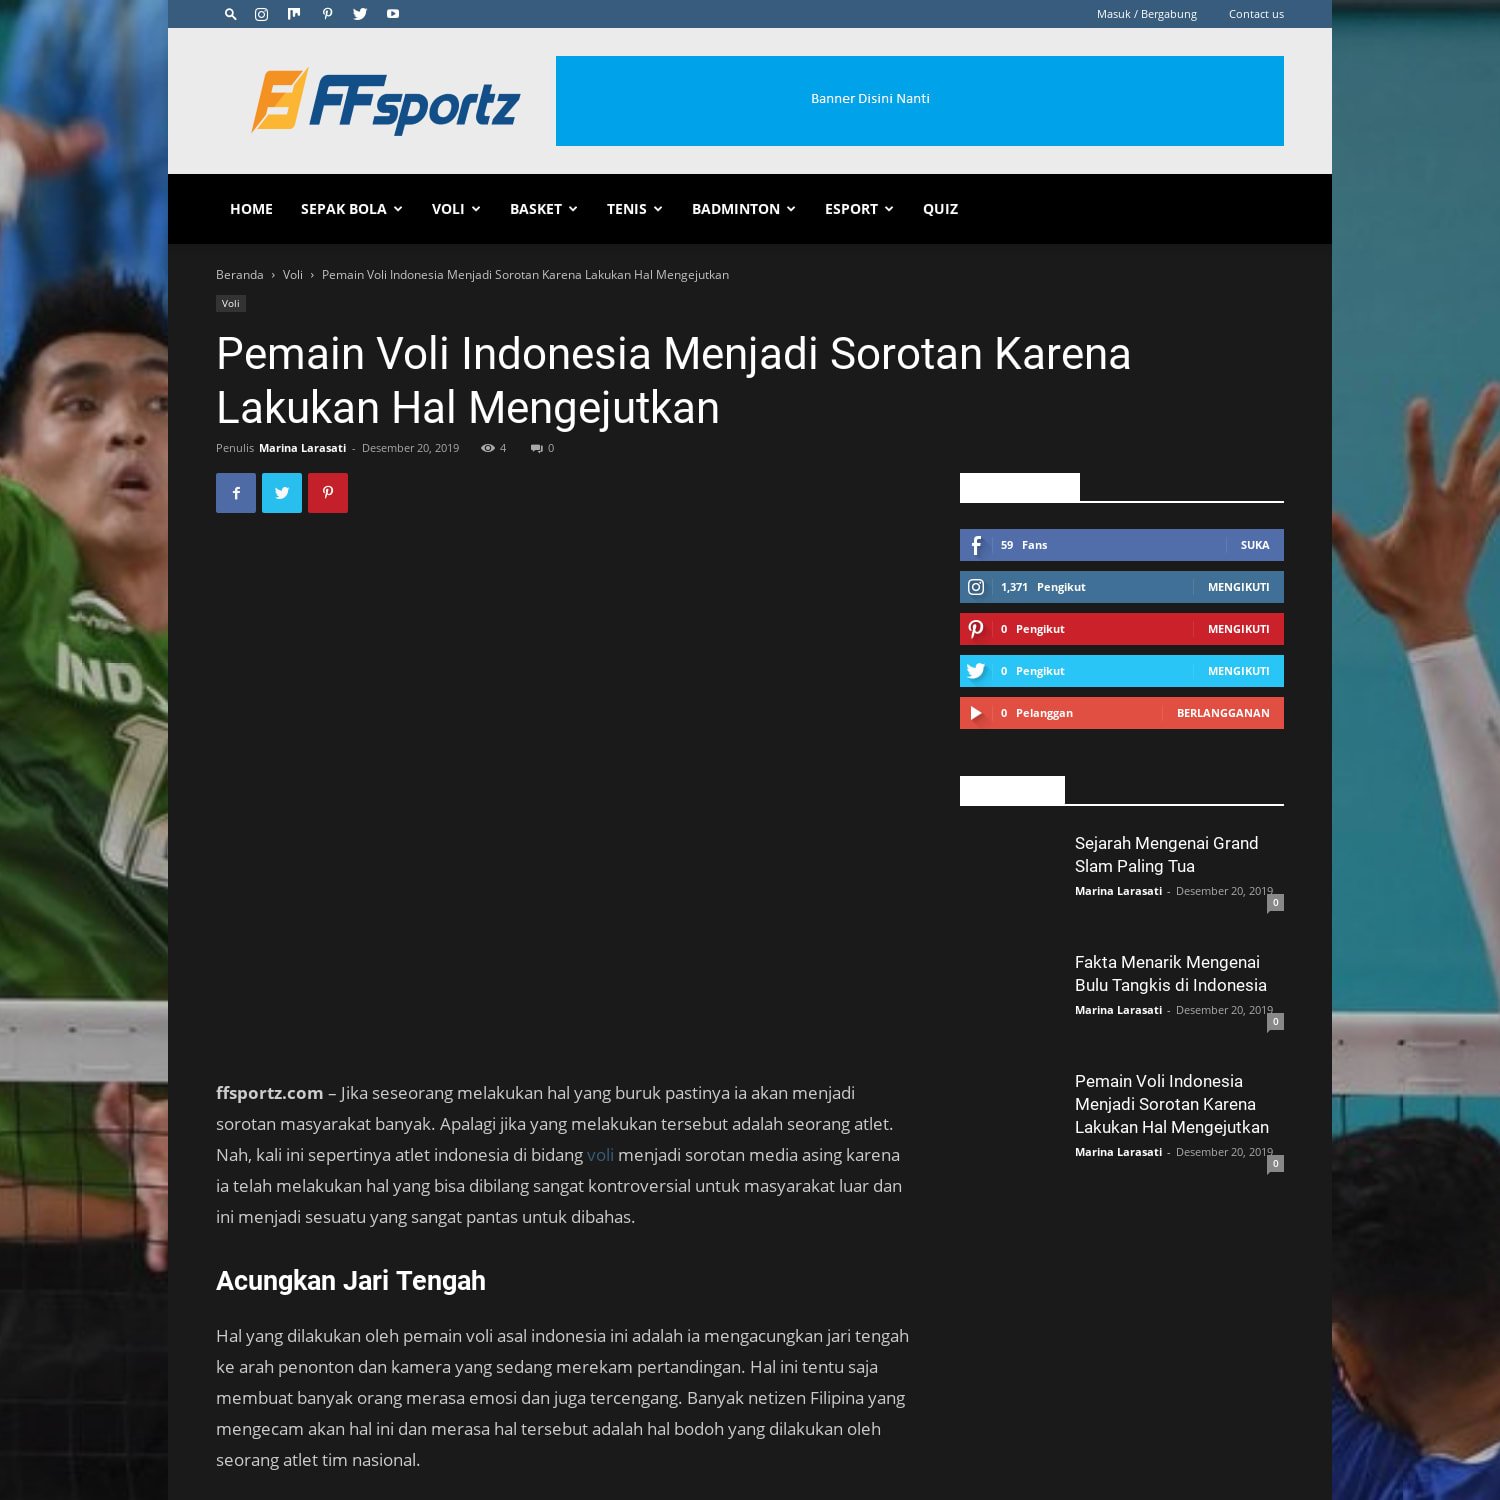 Pemain Voli Indonesia Menjadi Sorotan Karena Lakukan Hal Mengejutkan